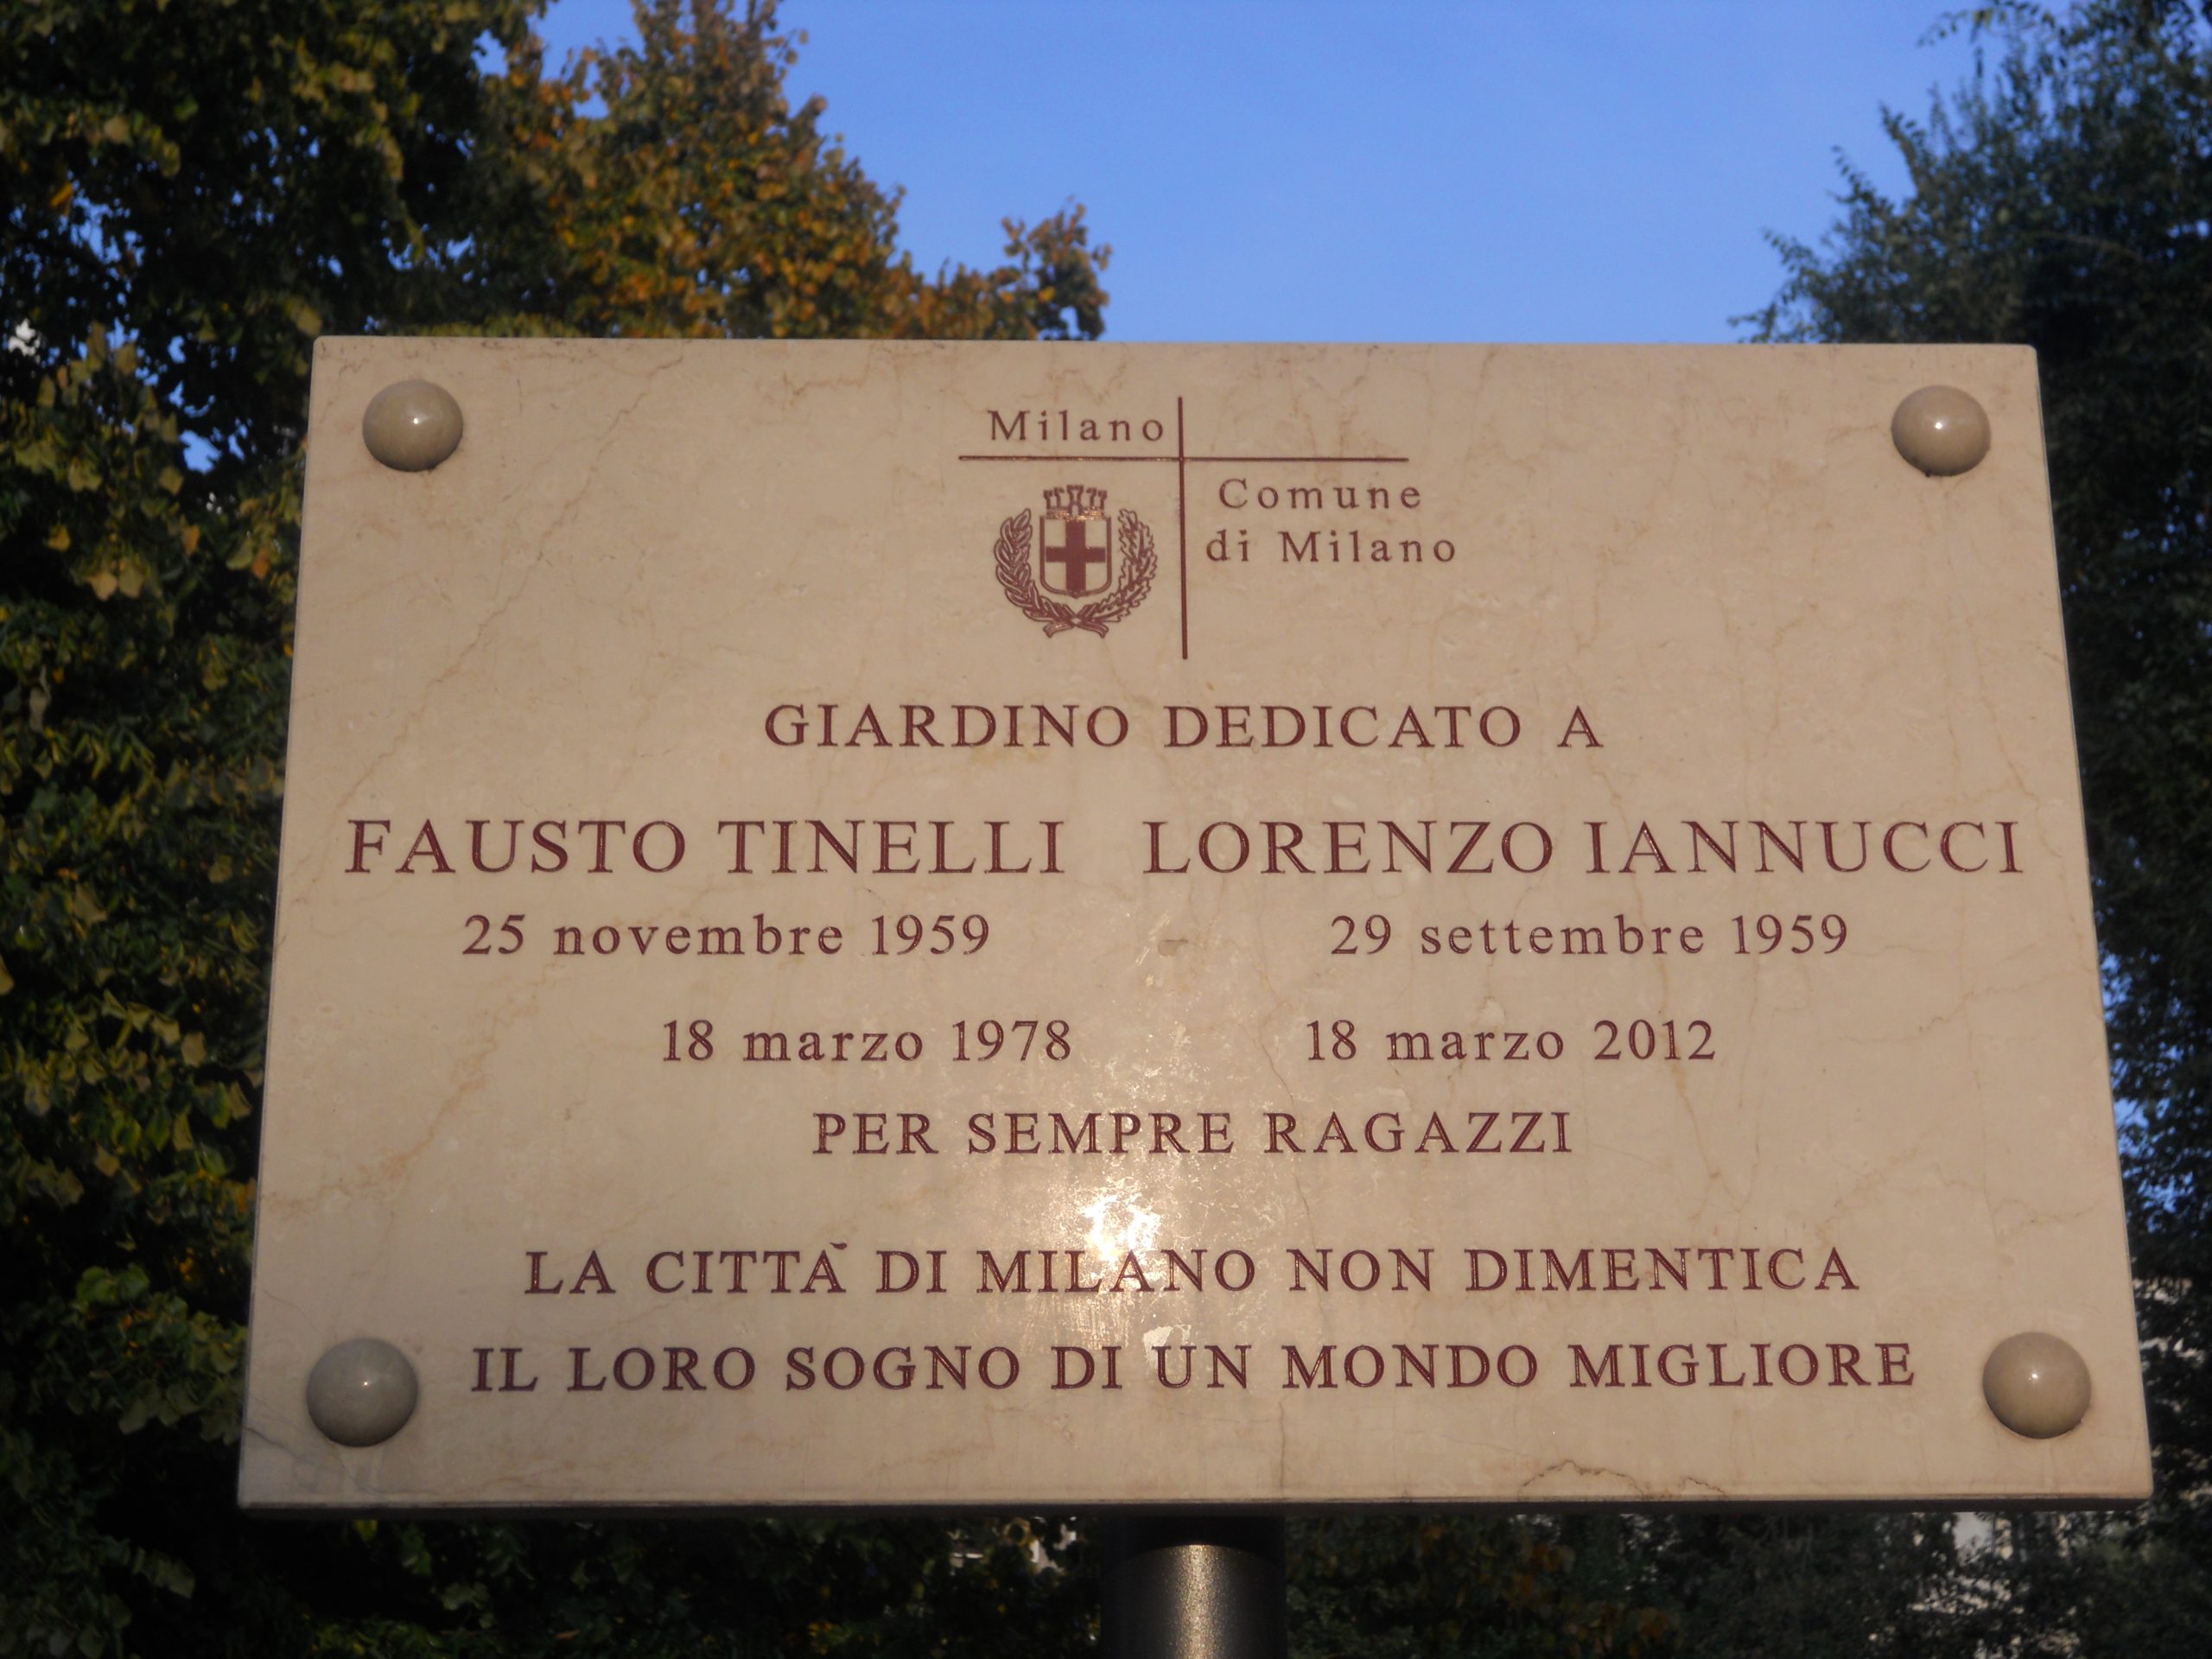 La targa all'interno del giardino dedicato a Fausto Tinelli e Lorenzo Iannucci